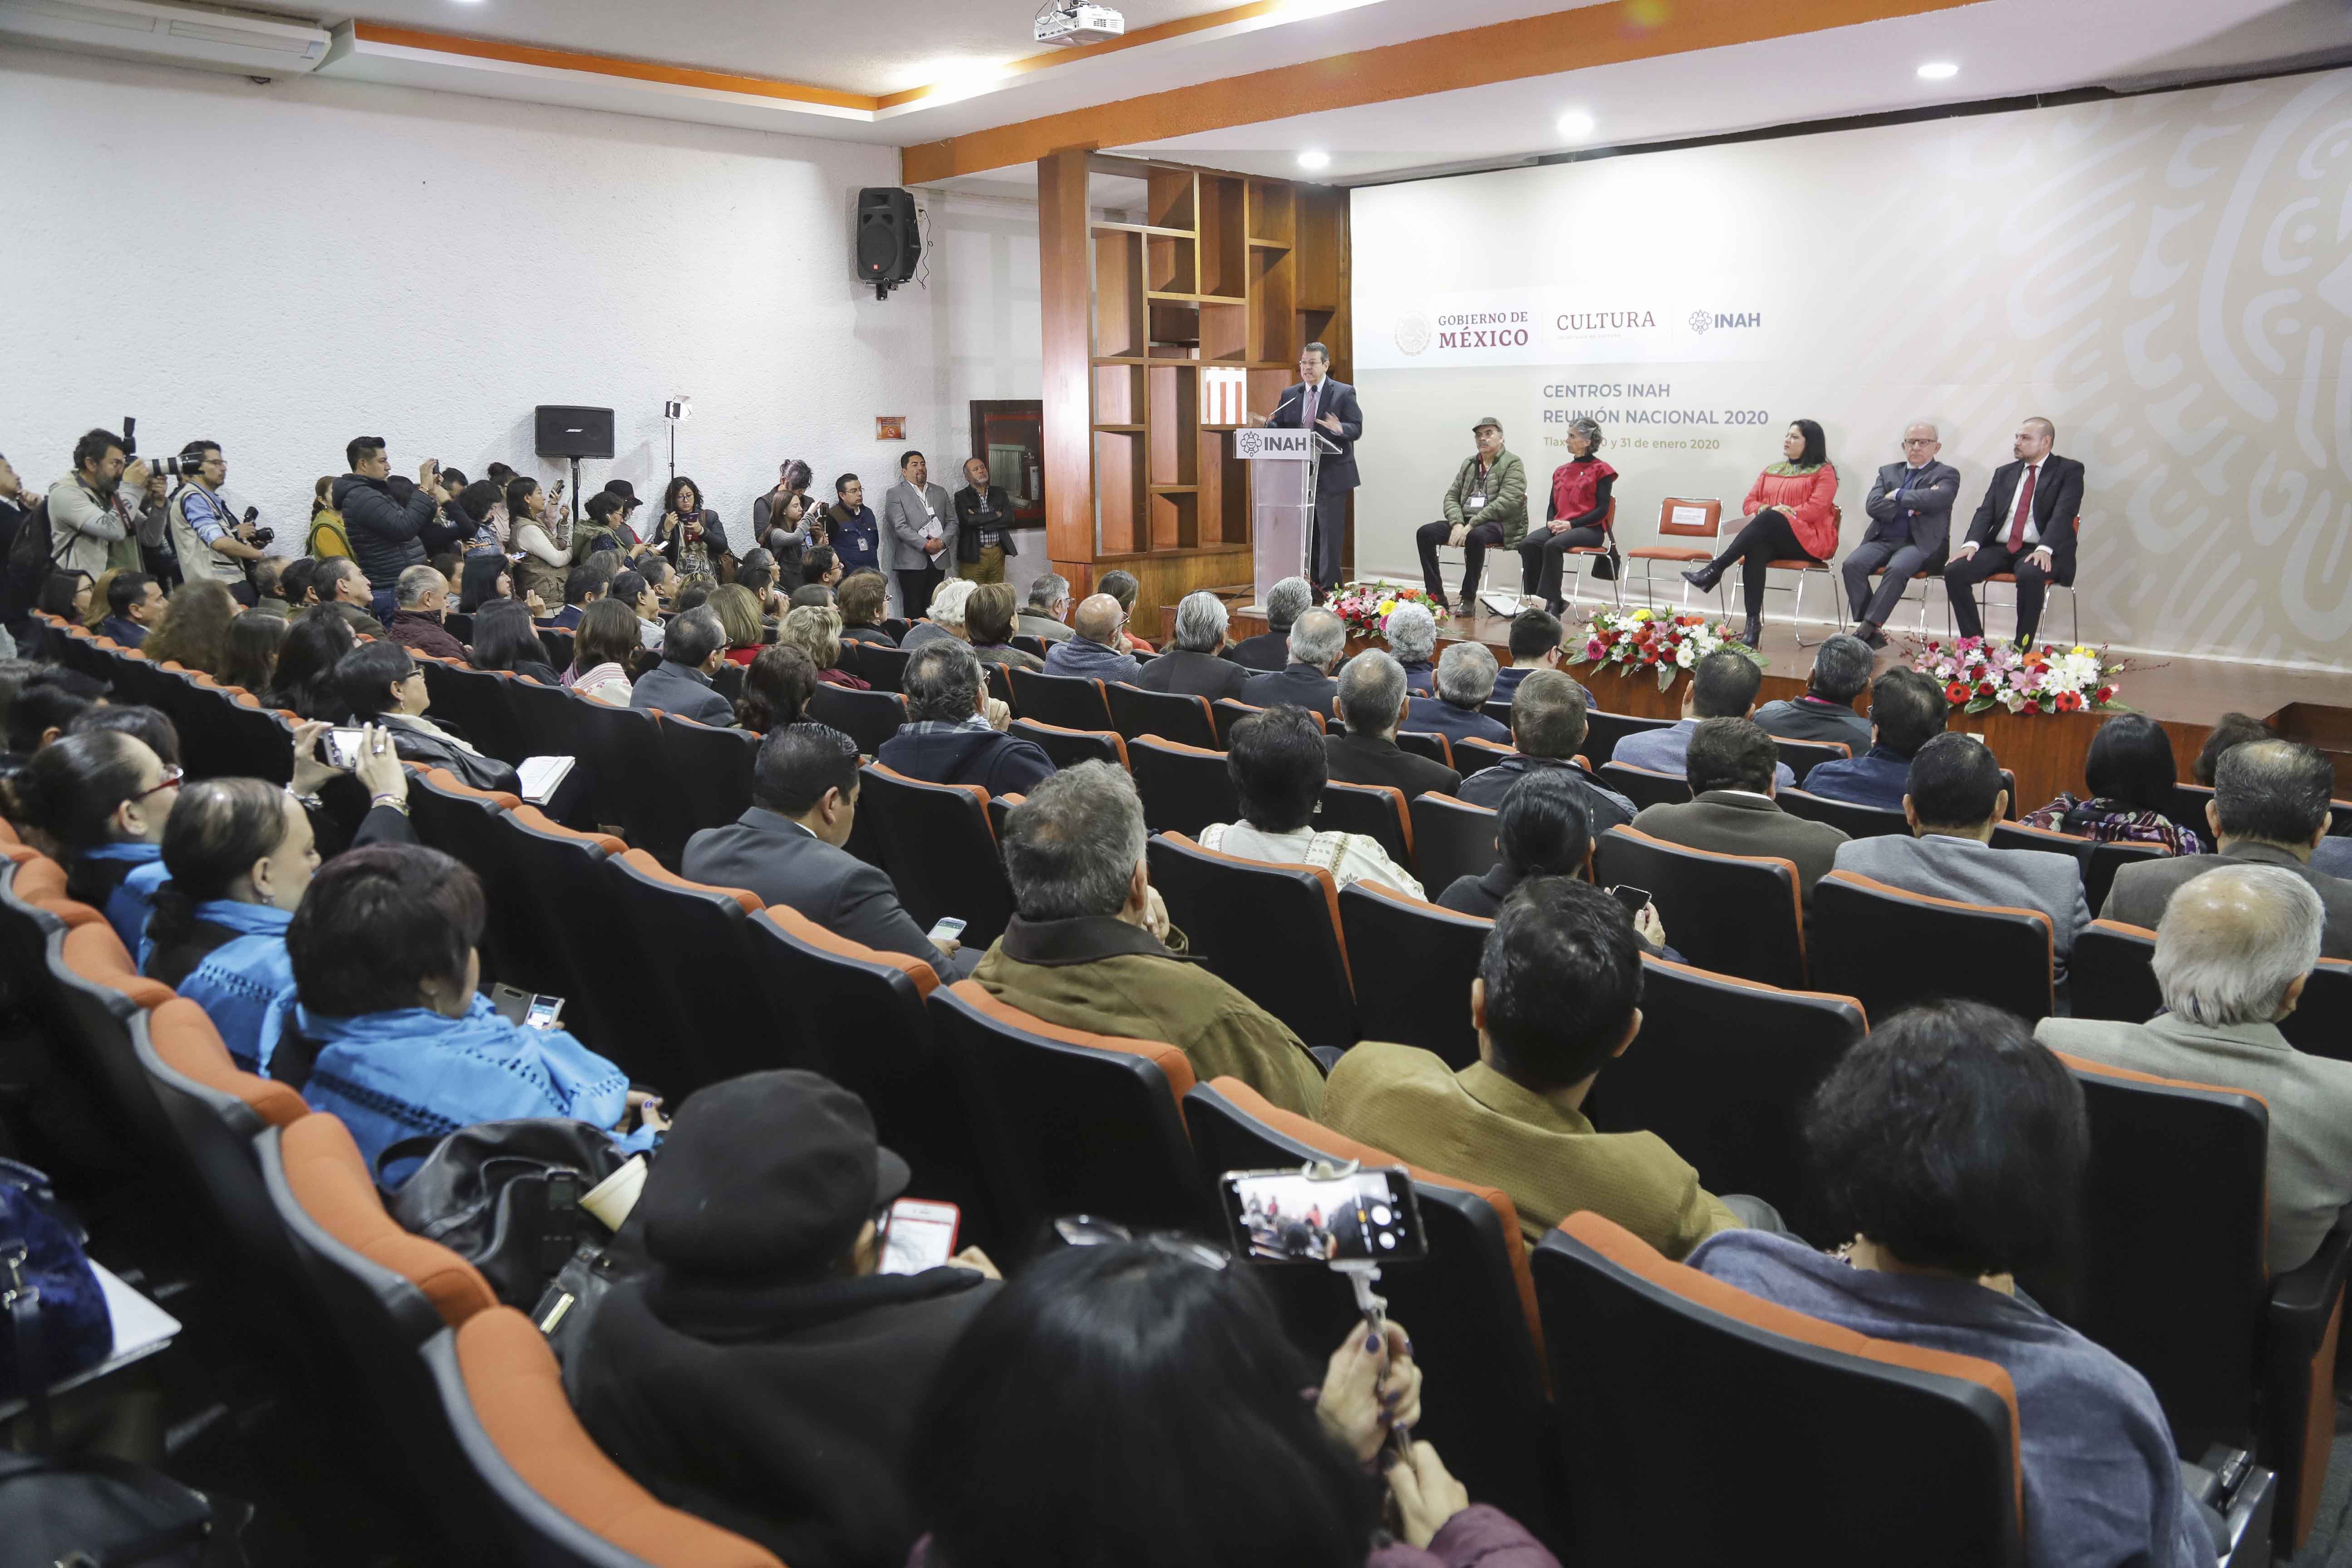 Marco Mena y secretaria de Cultura federal inauguran reunión nacional de centros INAH 2020